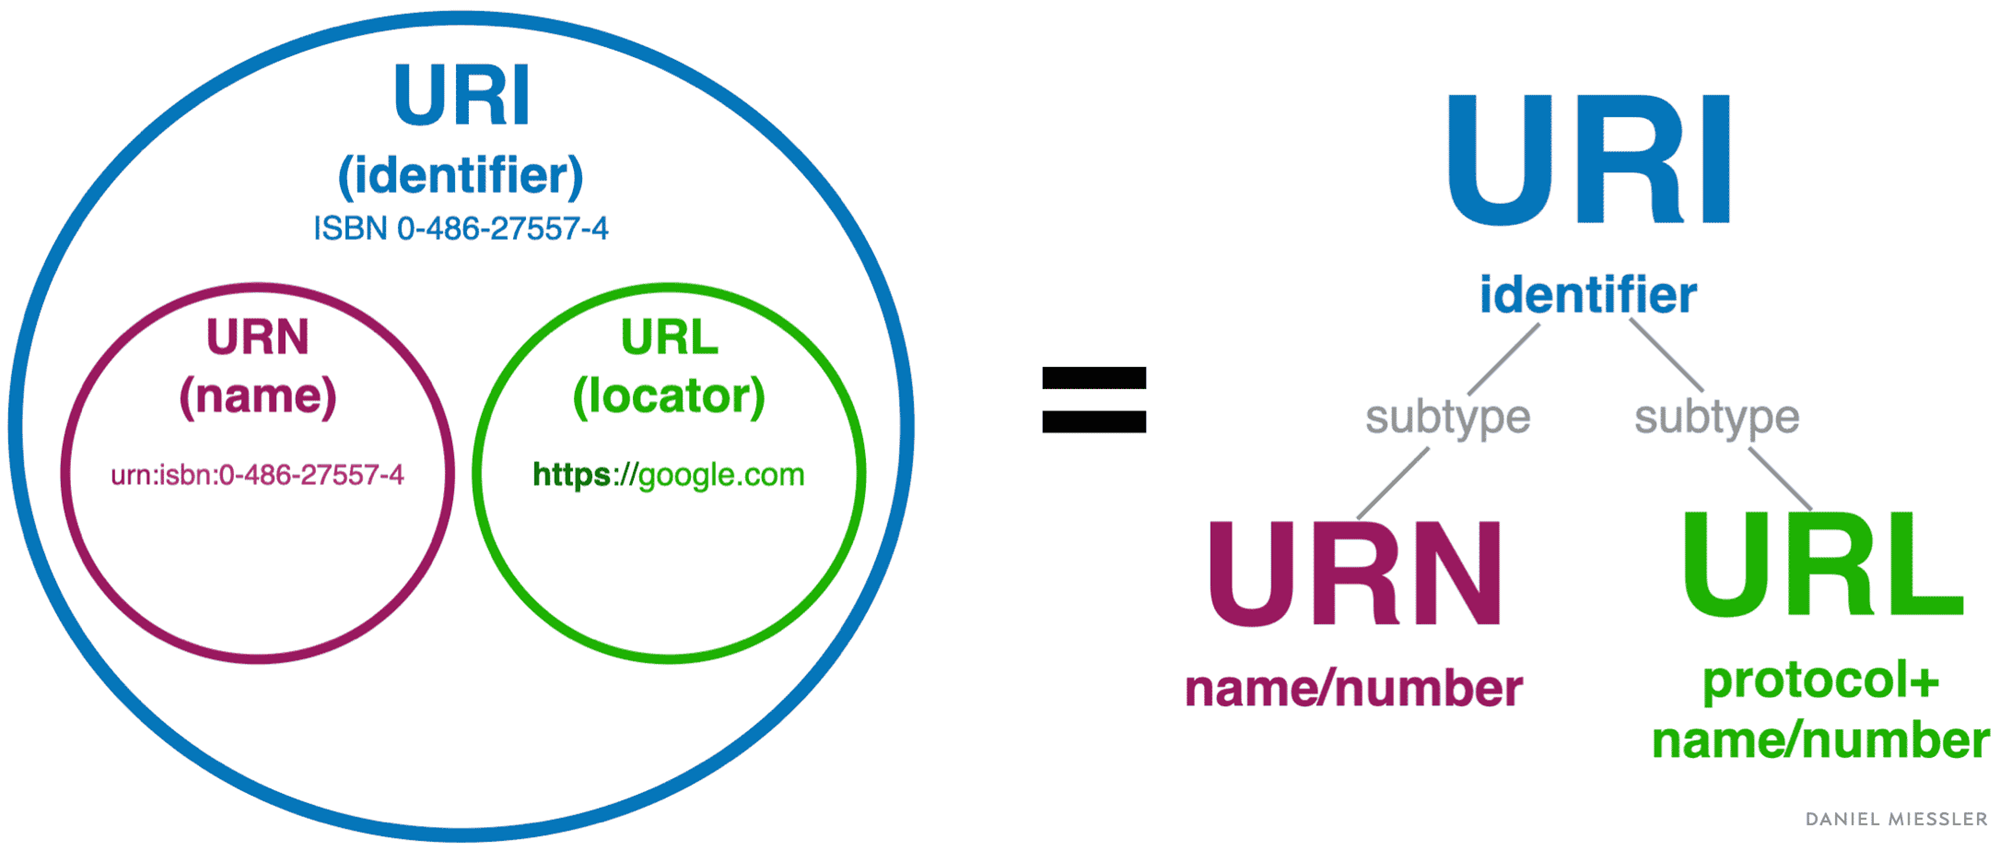 Mối quan hệ bổ trợ cho nhau giữa URL, URI và URN